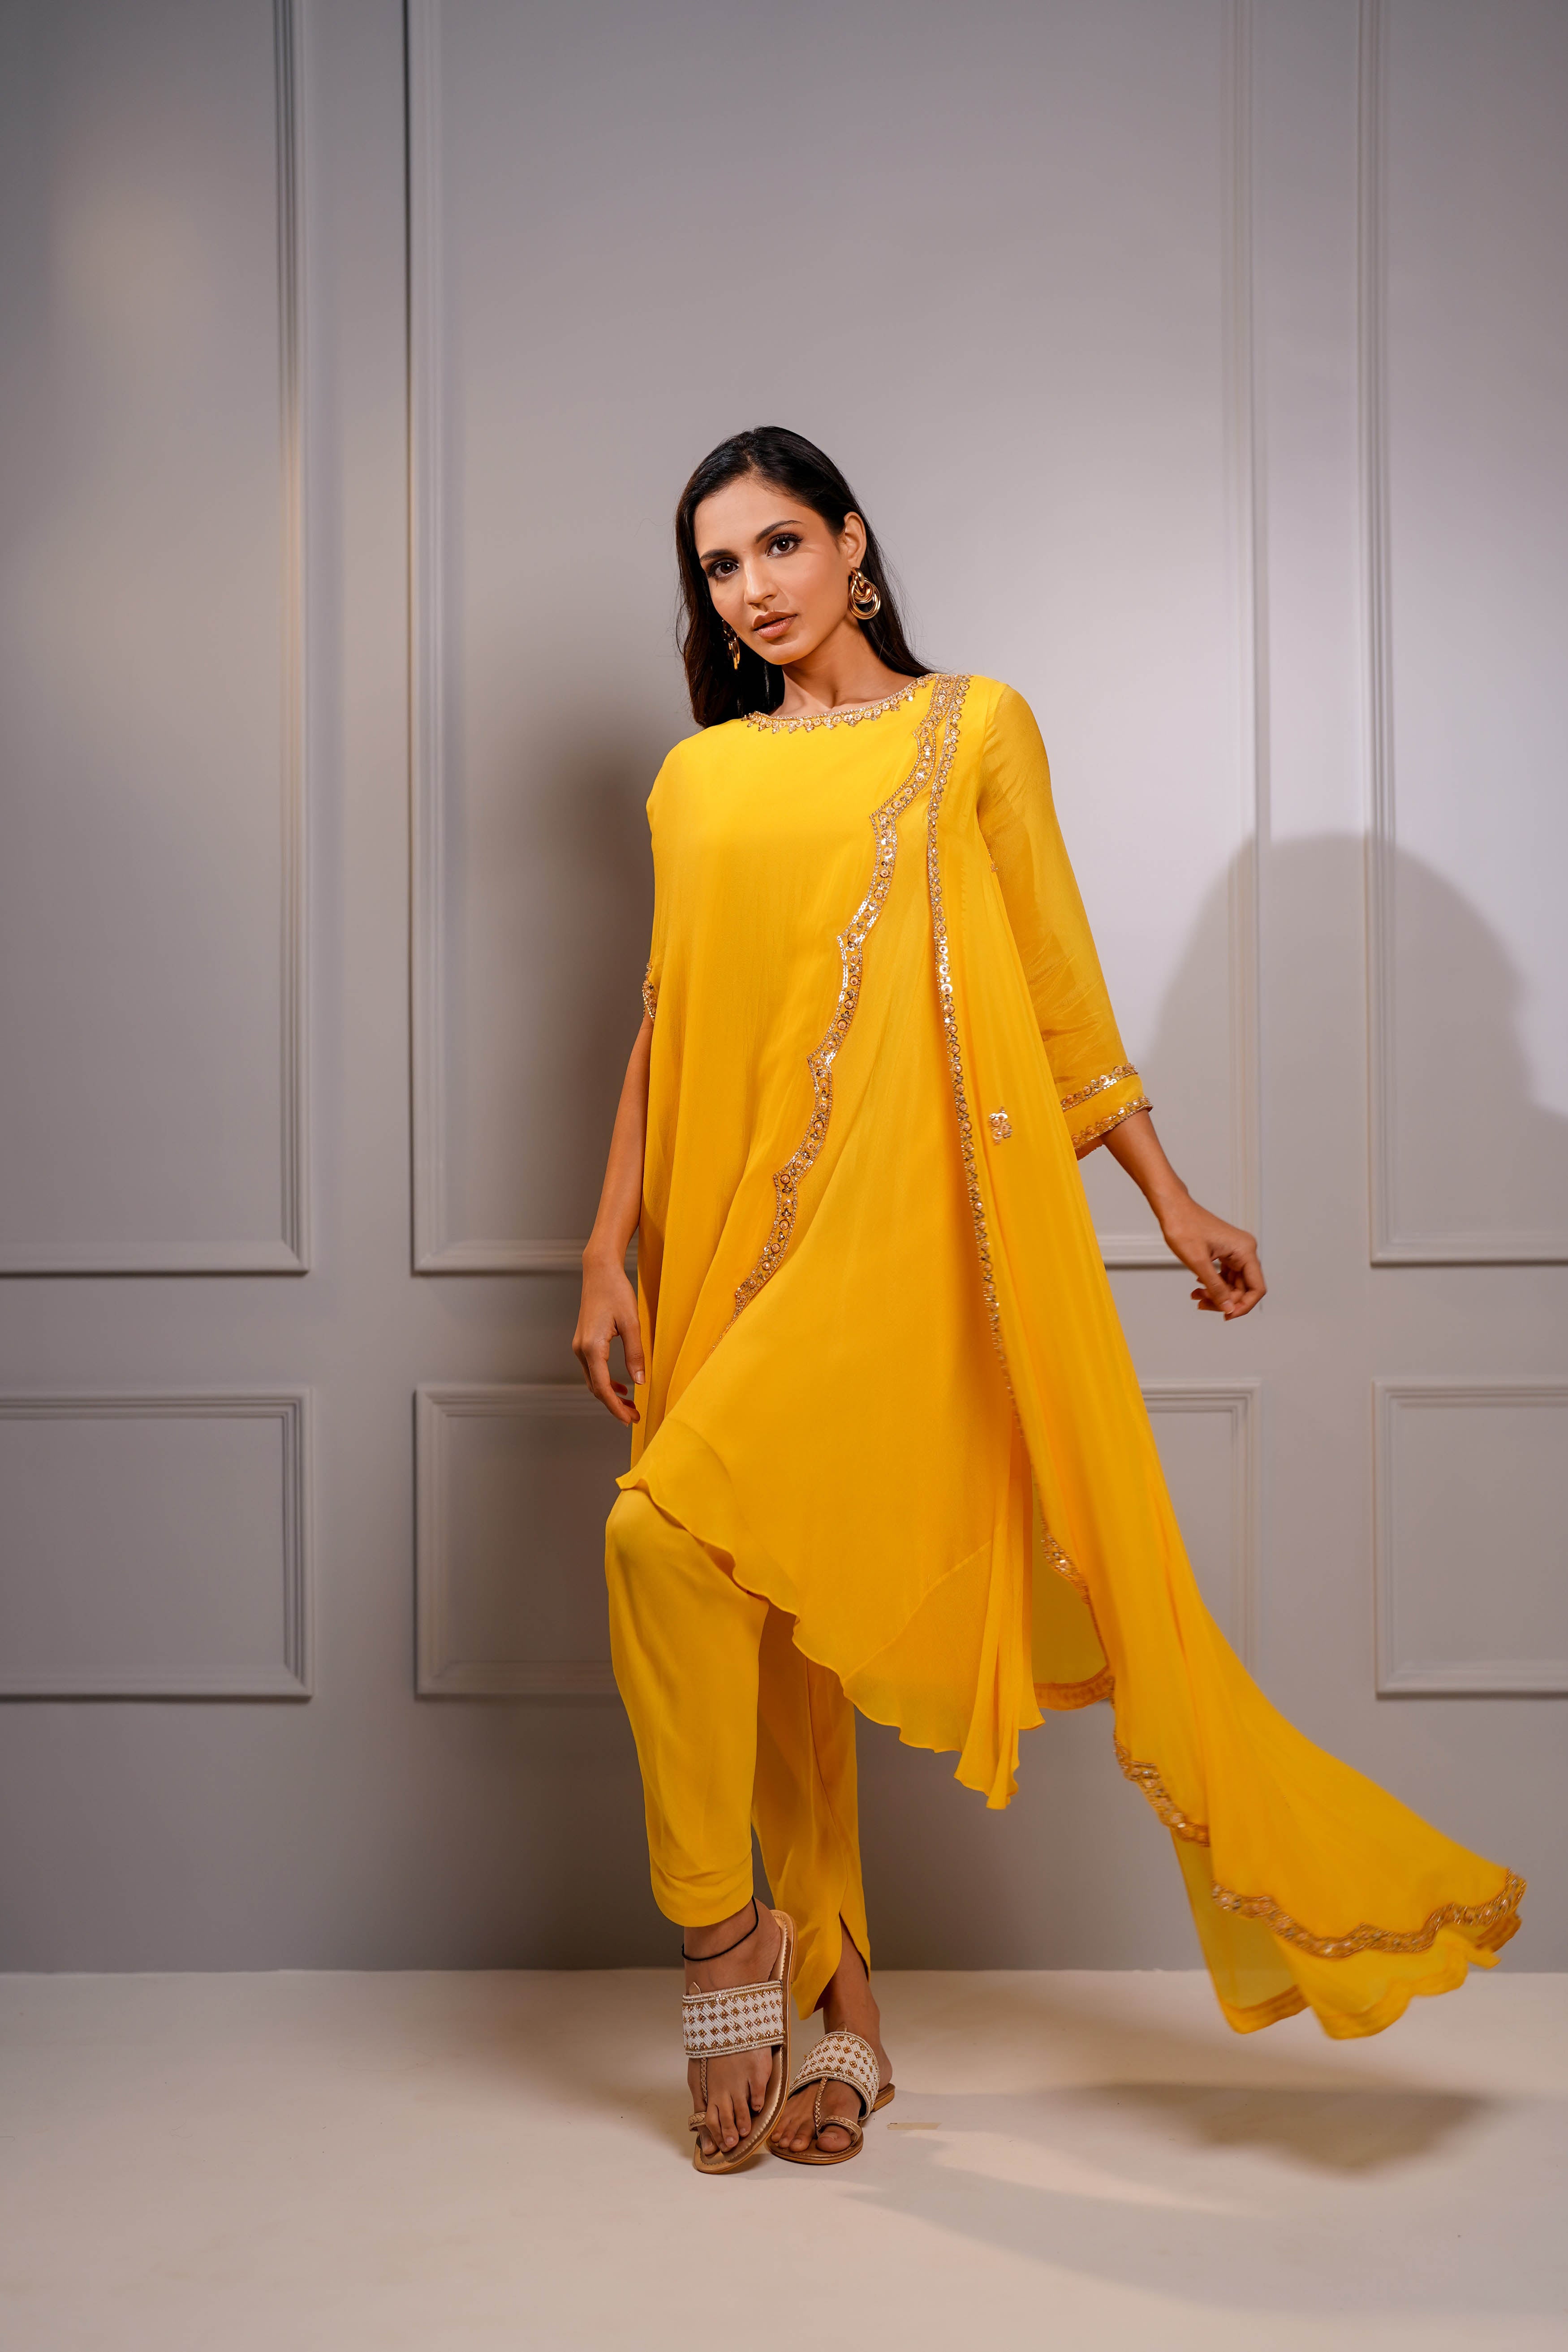 Mustard drape style tunic with dhoti pants sets.